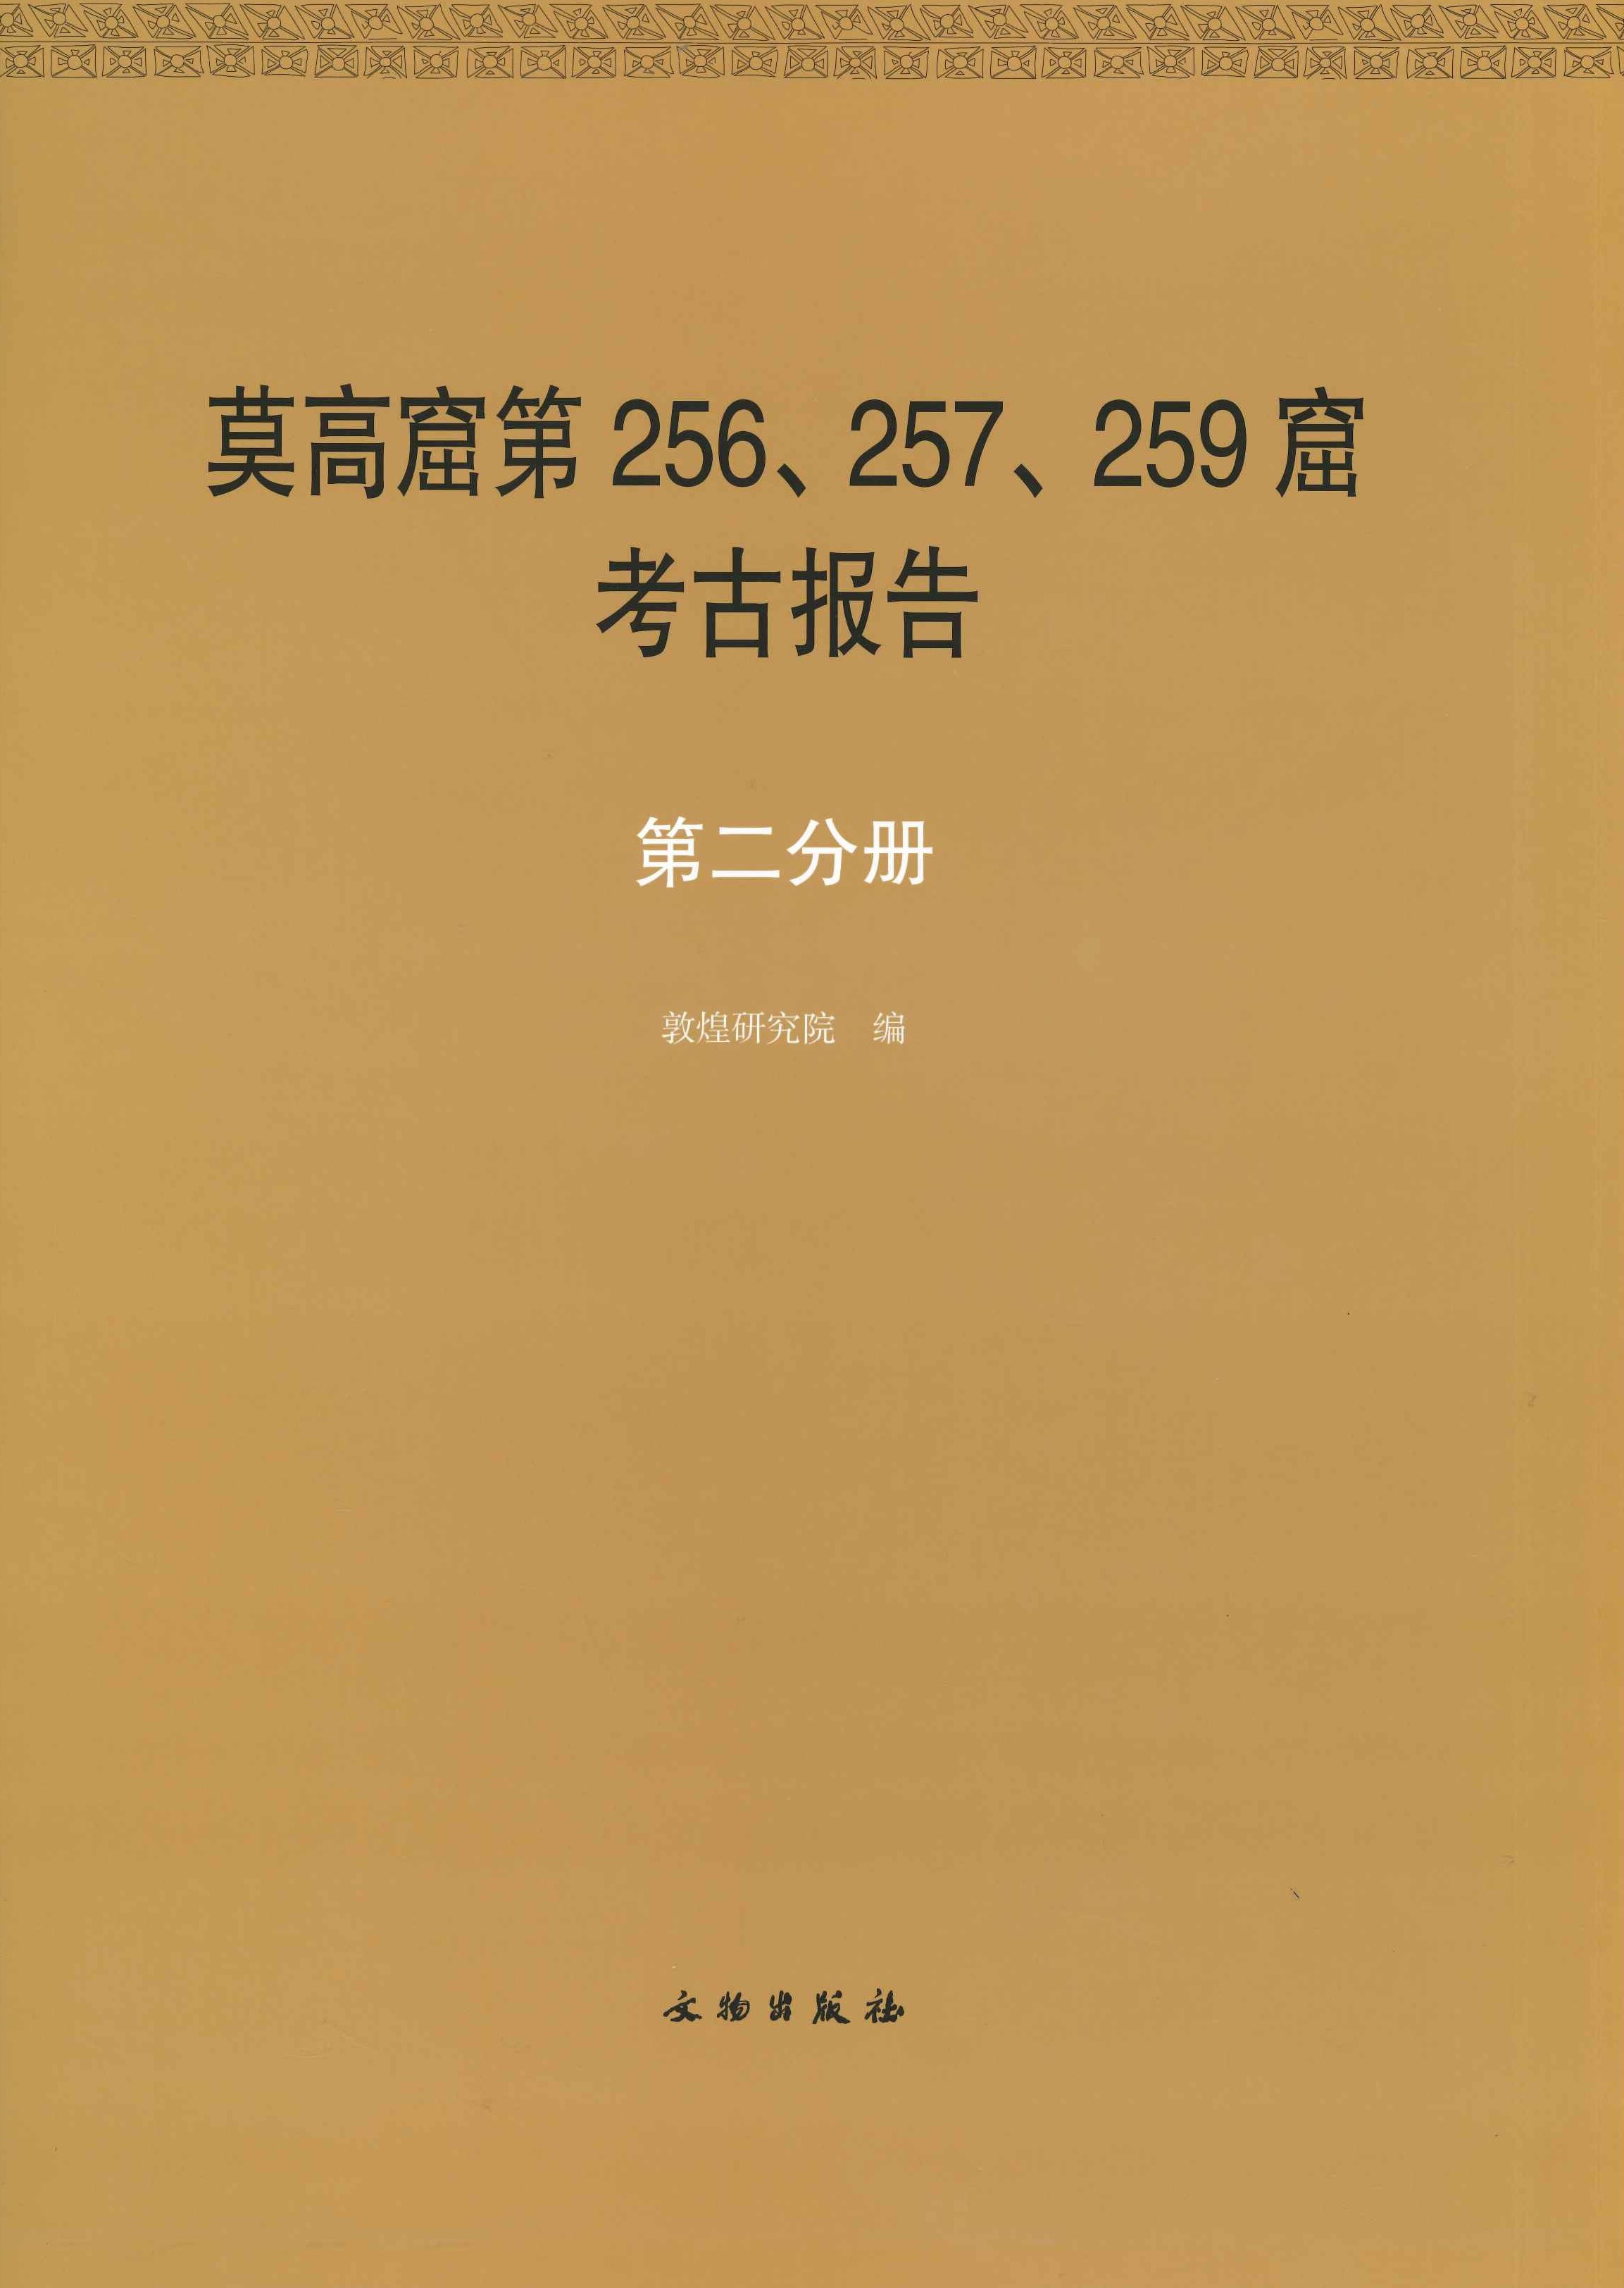 敦煌石窟全集第二卷 莫高窟第256、257、259窟考古报告